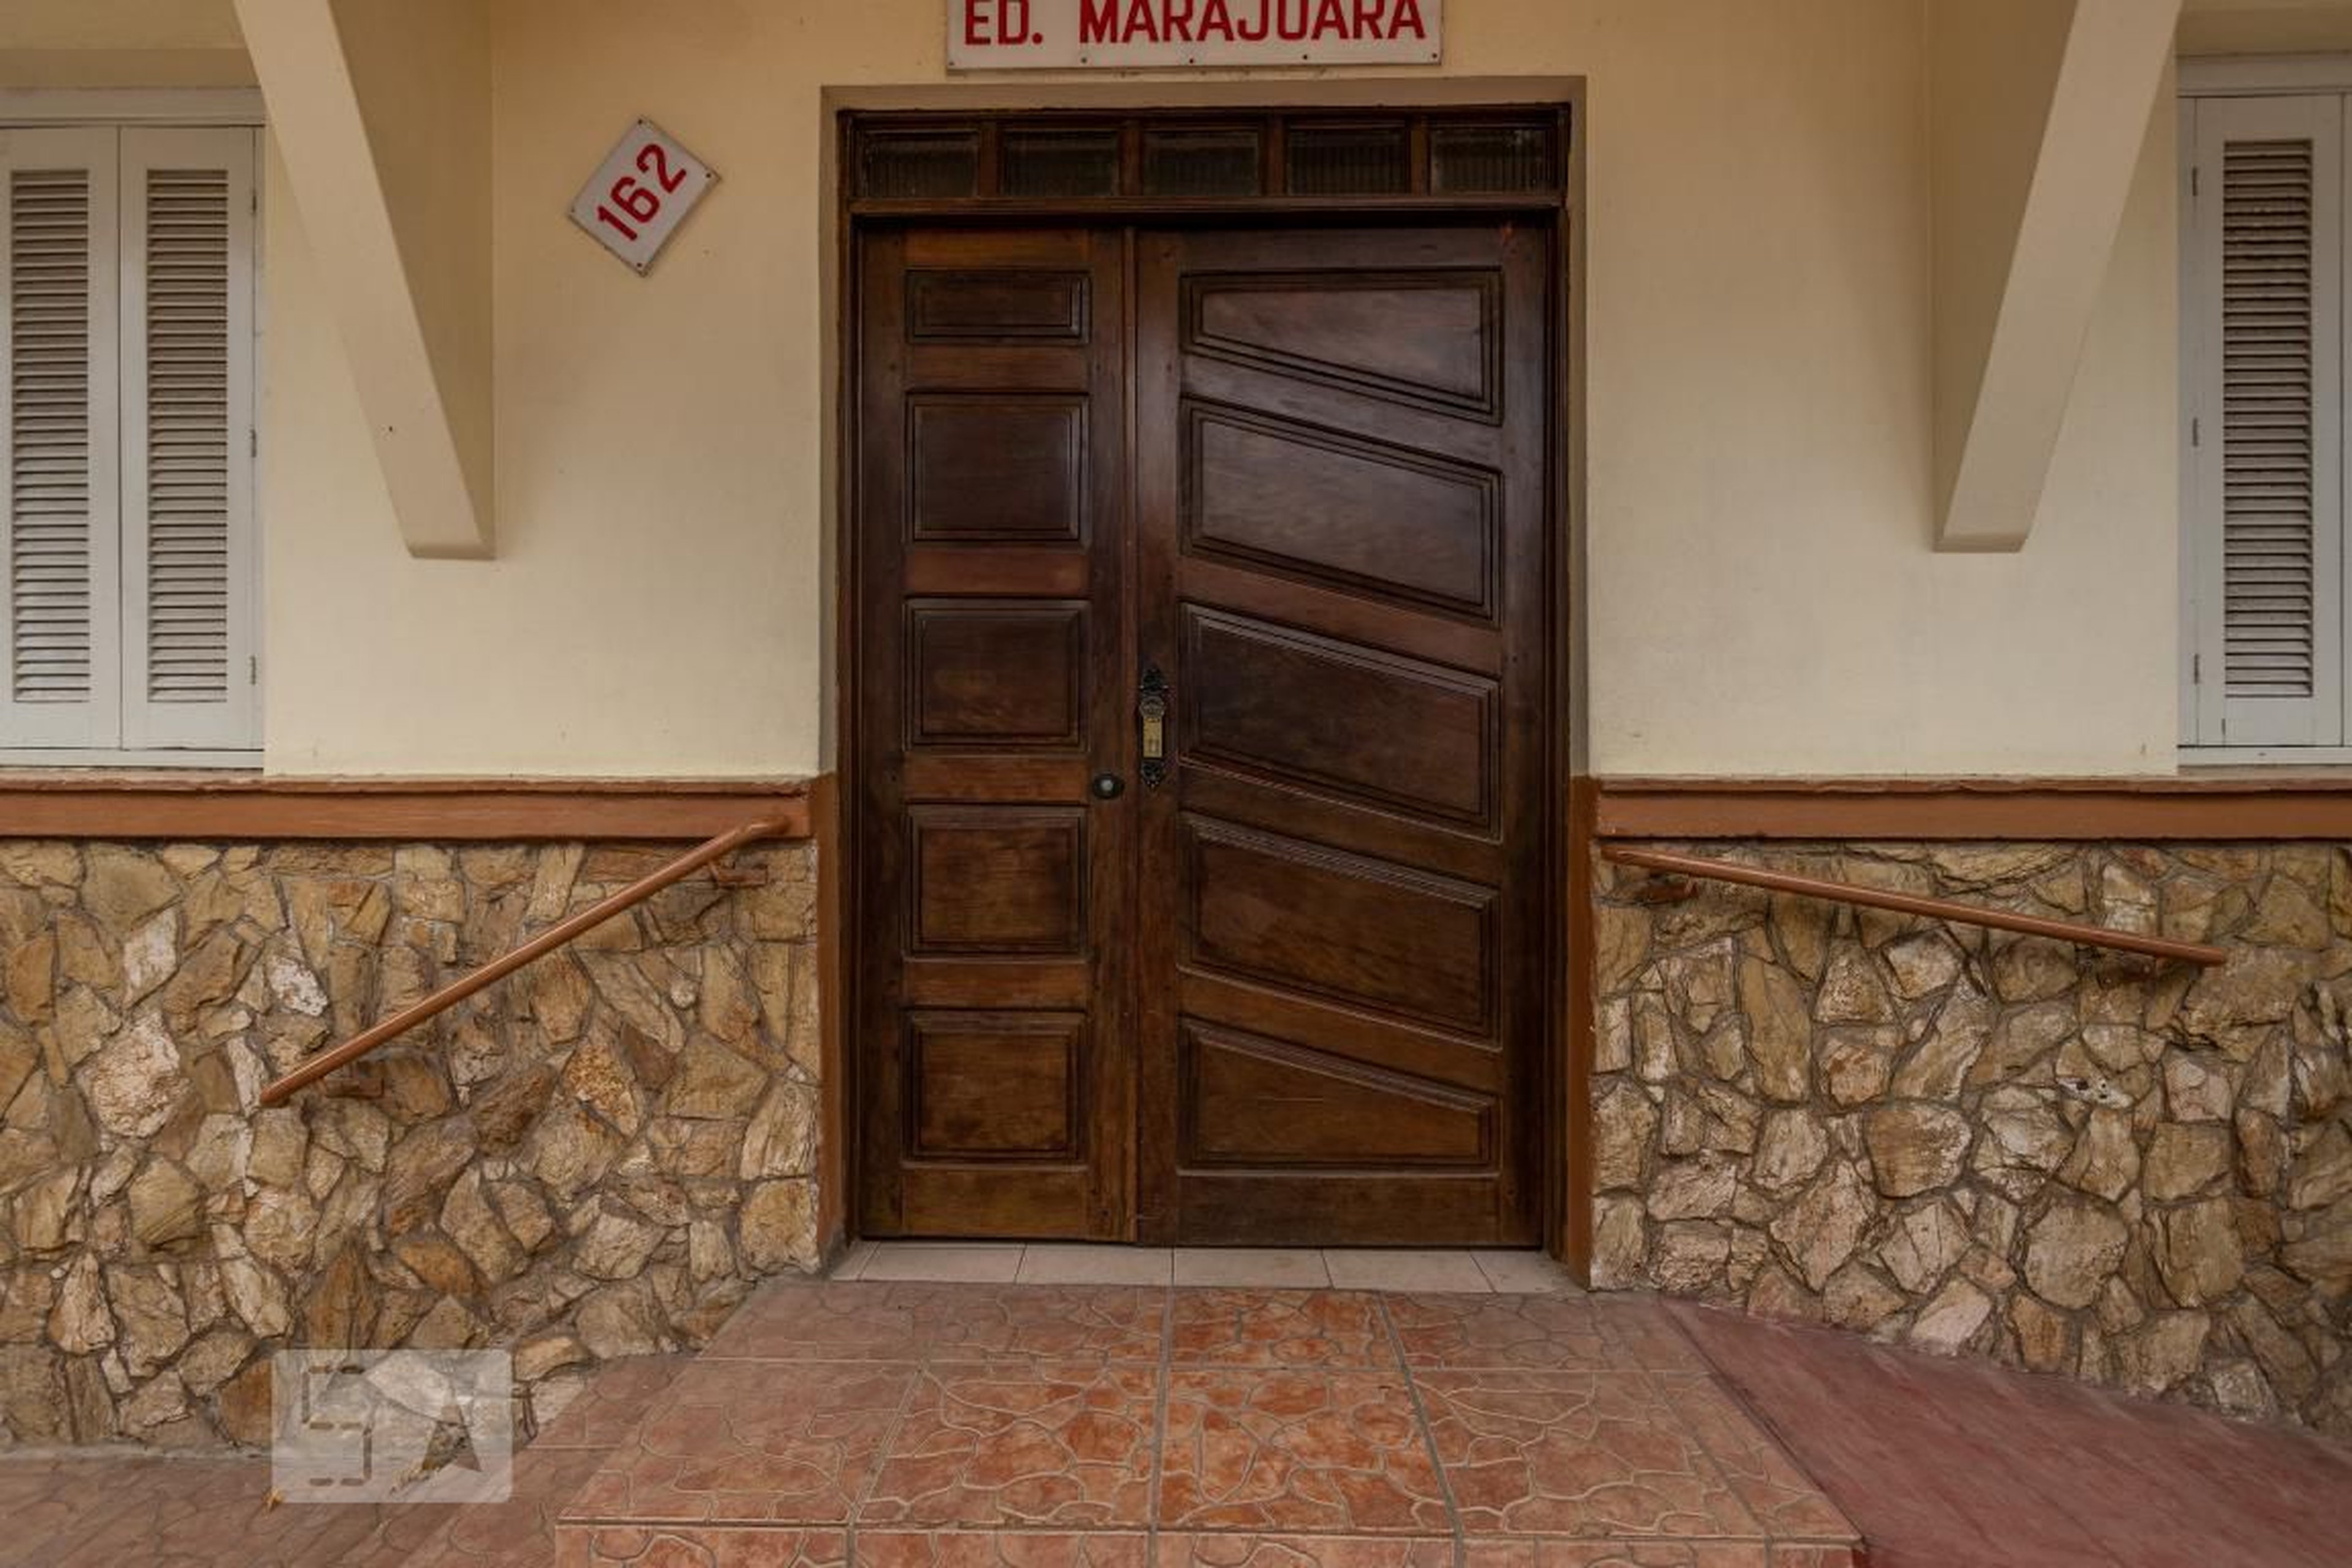 Entrada - Edifício Marajoara